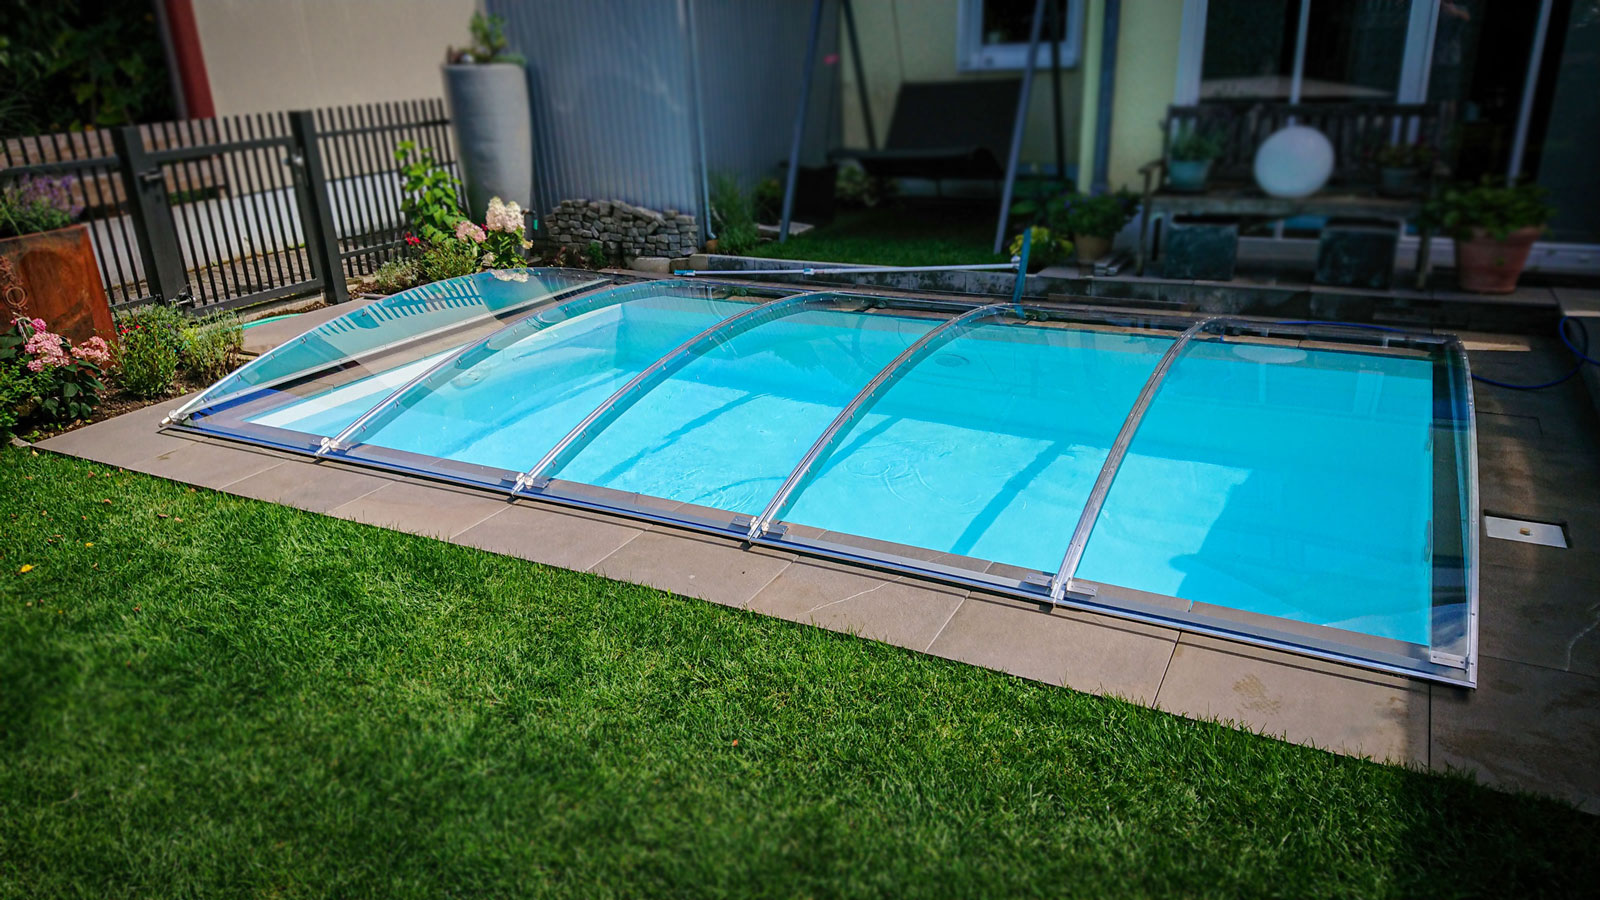 FlexiRoof Clear - edle Poolüberdachung aus klarem Plexiglas leicht zu öffnen, ohne Schienen